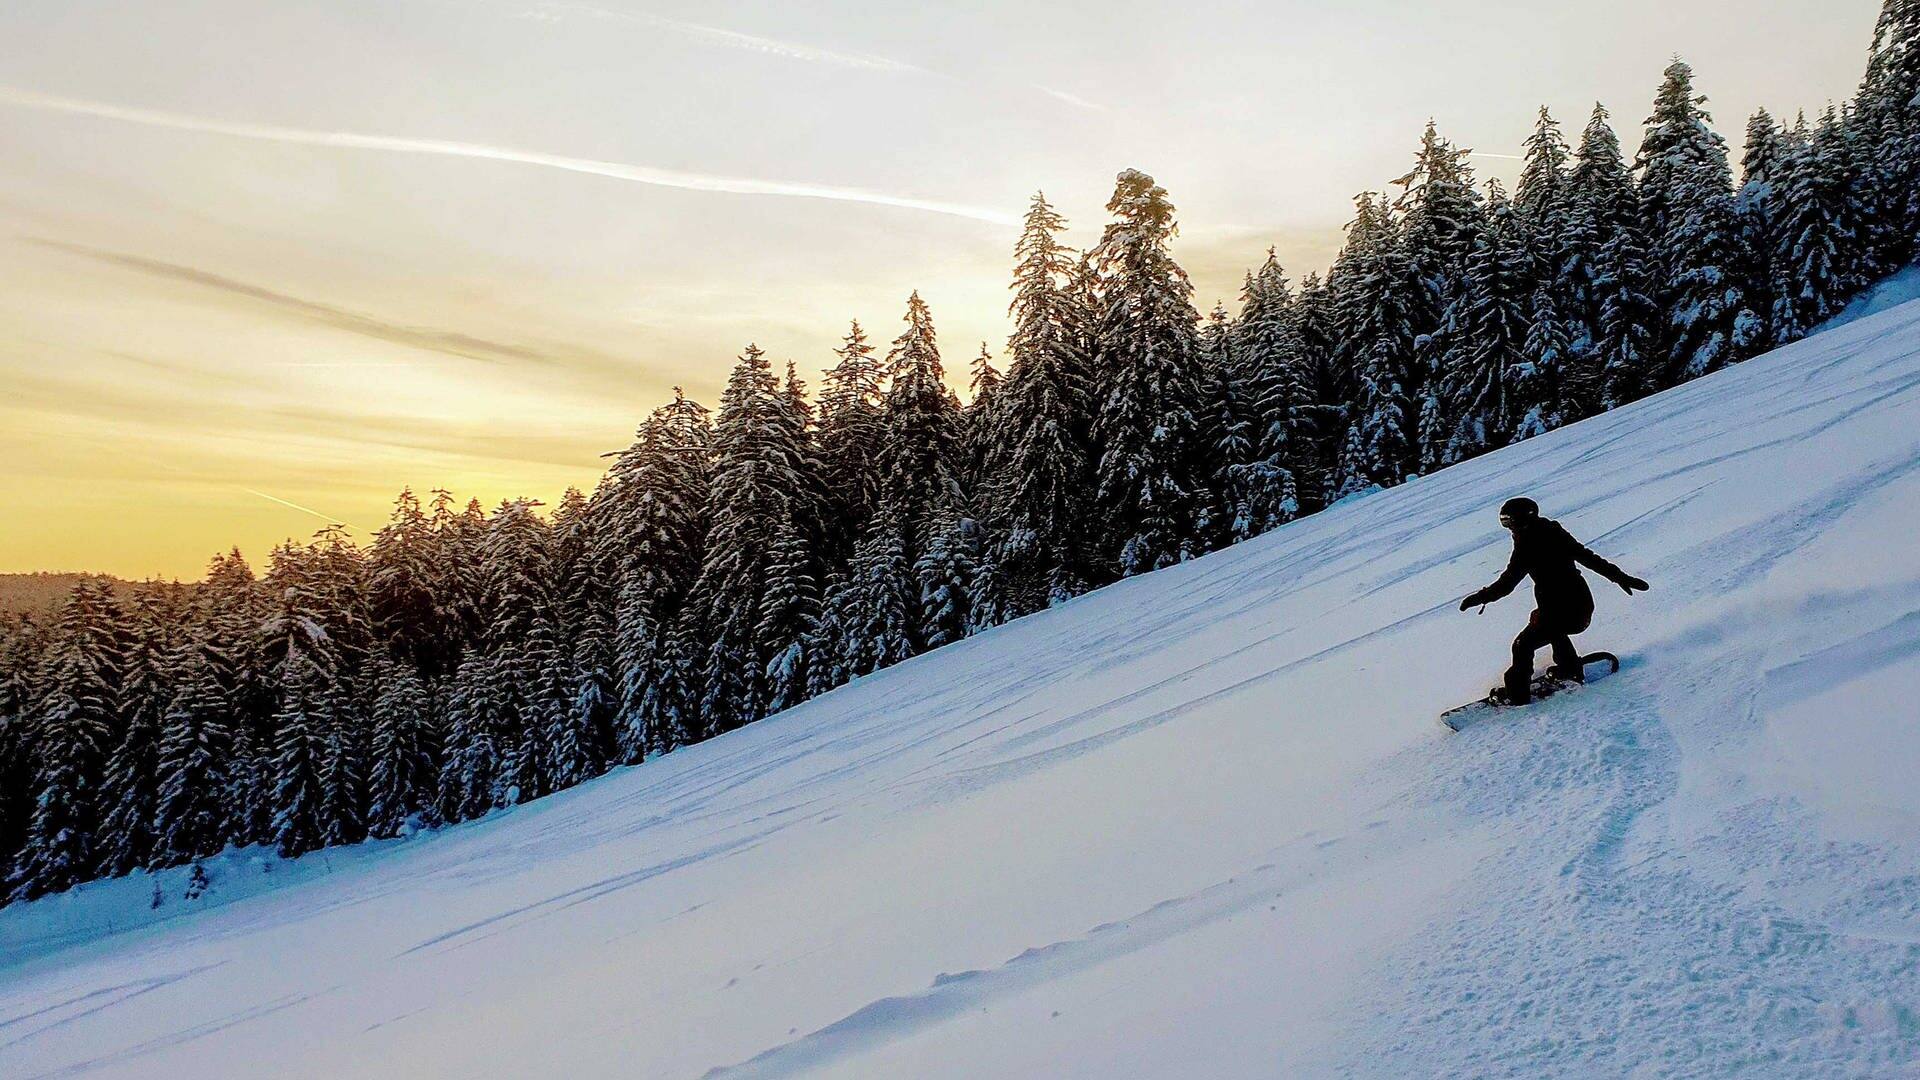 Traumbilder im Schnee: Snow-Diving in den Morgen. Das ist, warum wir Skifahren und Snowboarden lieben. (Foto: SWR3, Stefan Scheurer)